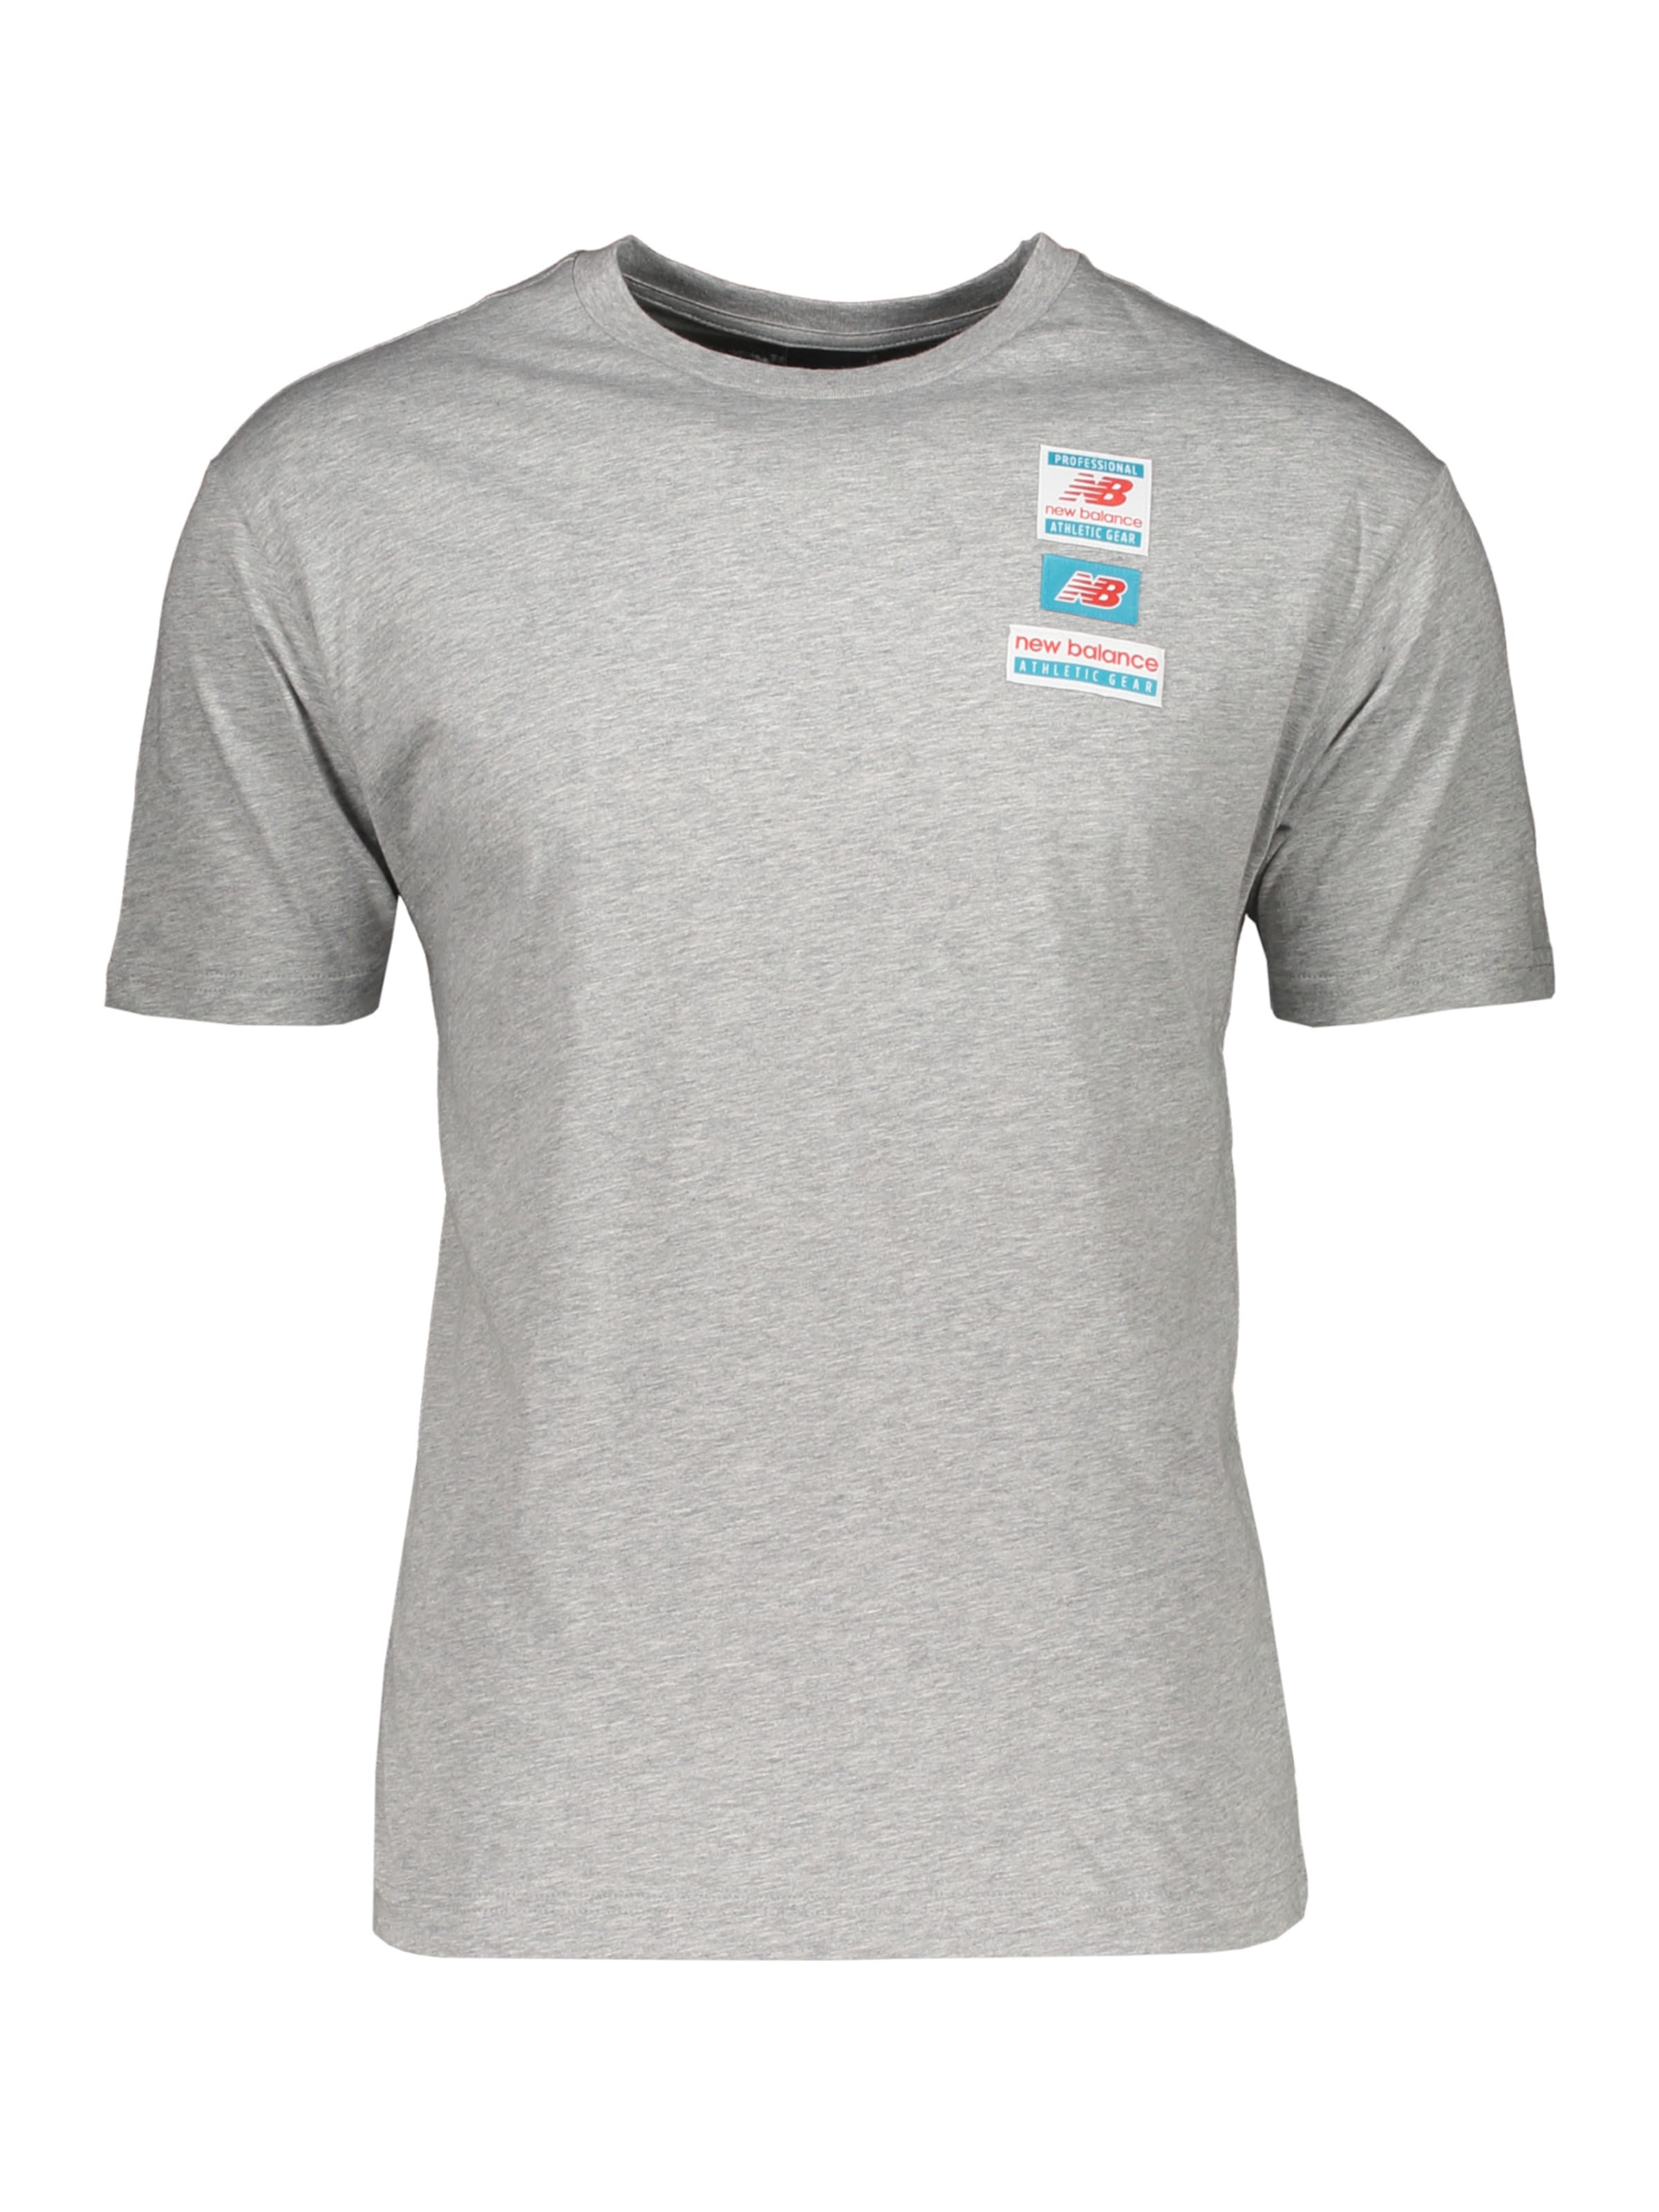 Männer Shirts new balance Shirt in Graumeliert - RD00604